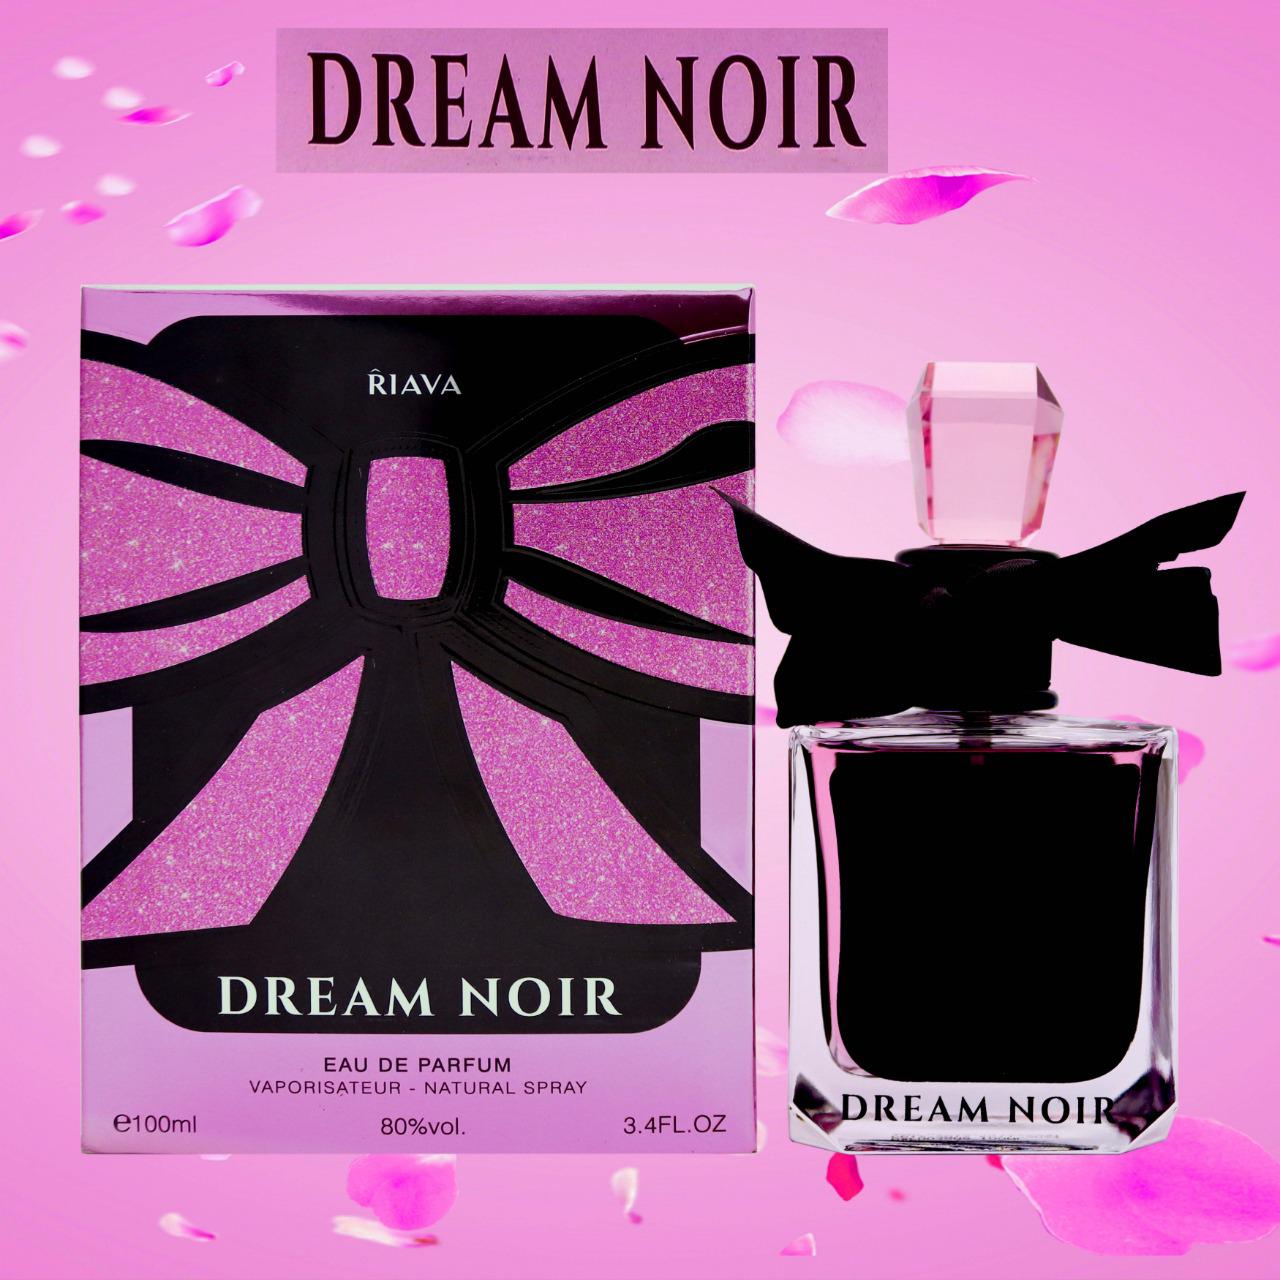 Dream Noir from Riava Perfumes  Eau de Parfum | 100ml